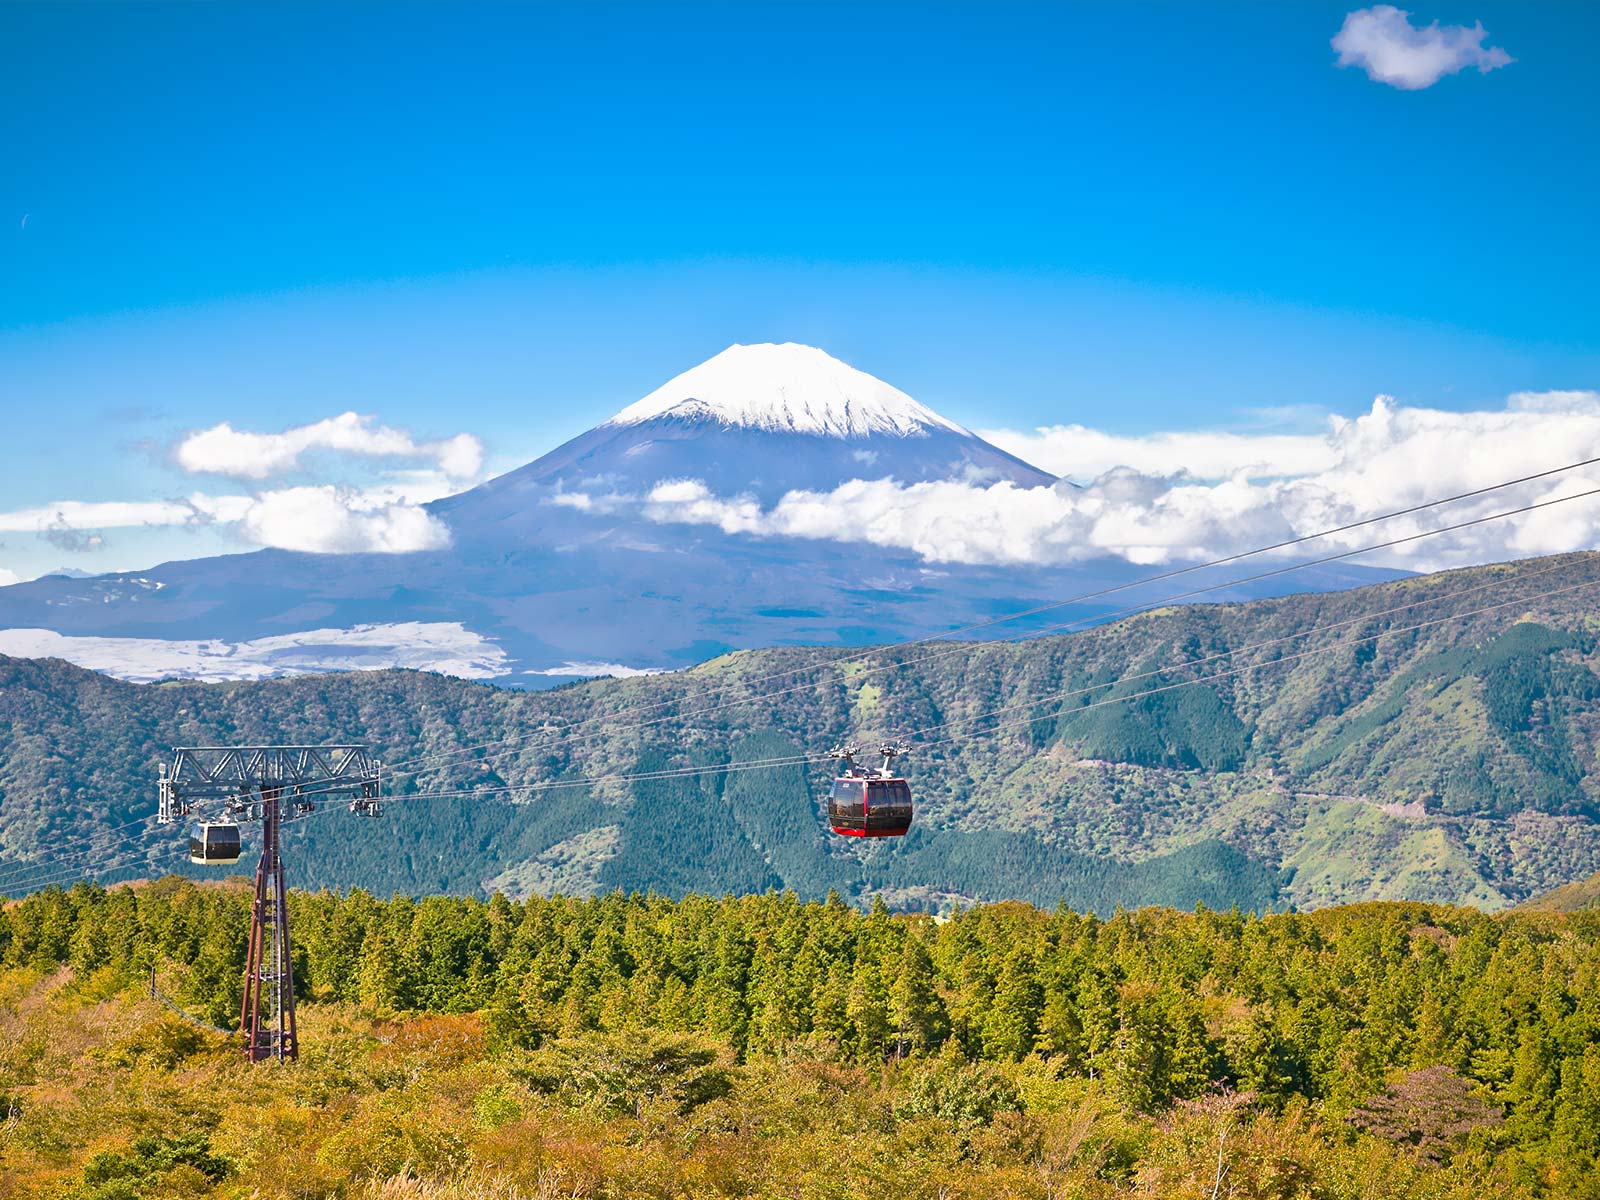 Mt. Fuji Ropeway